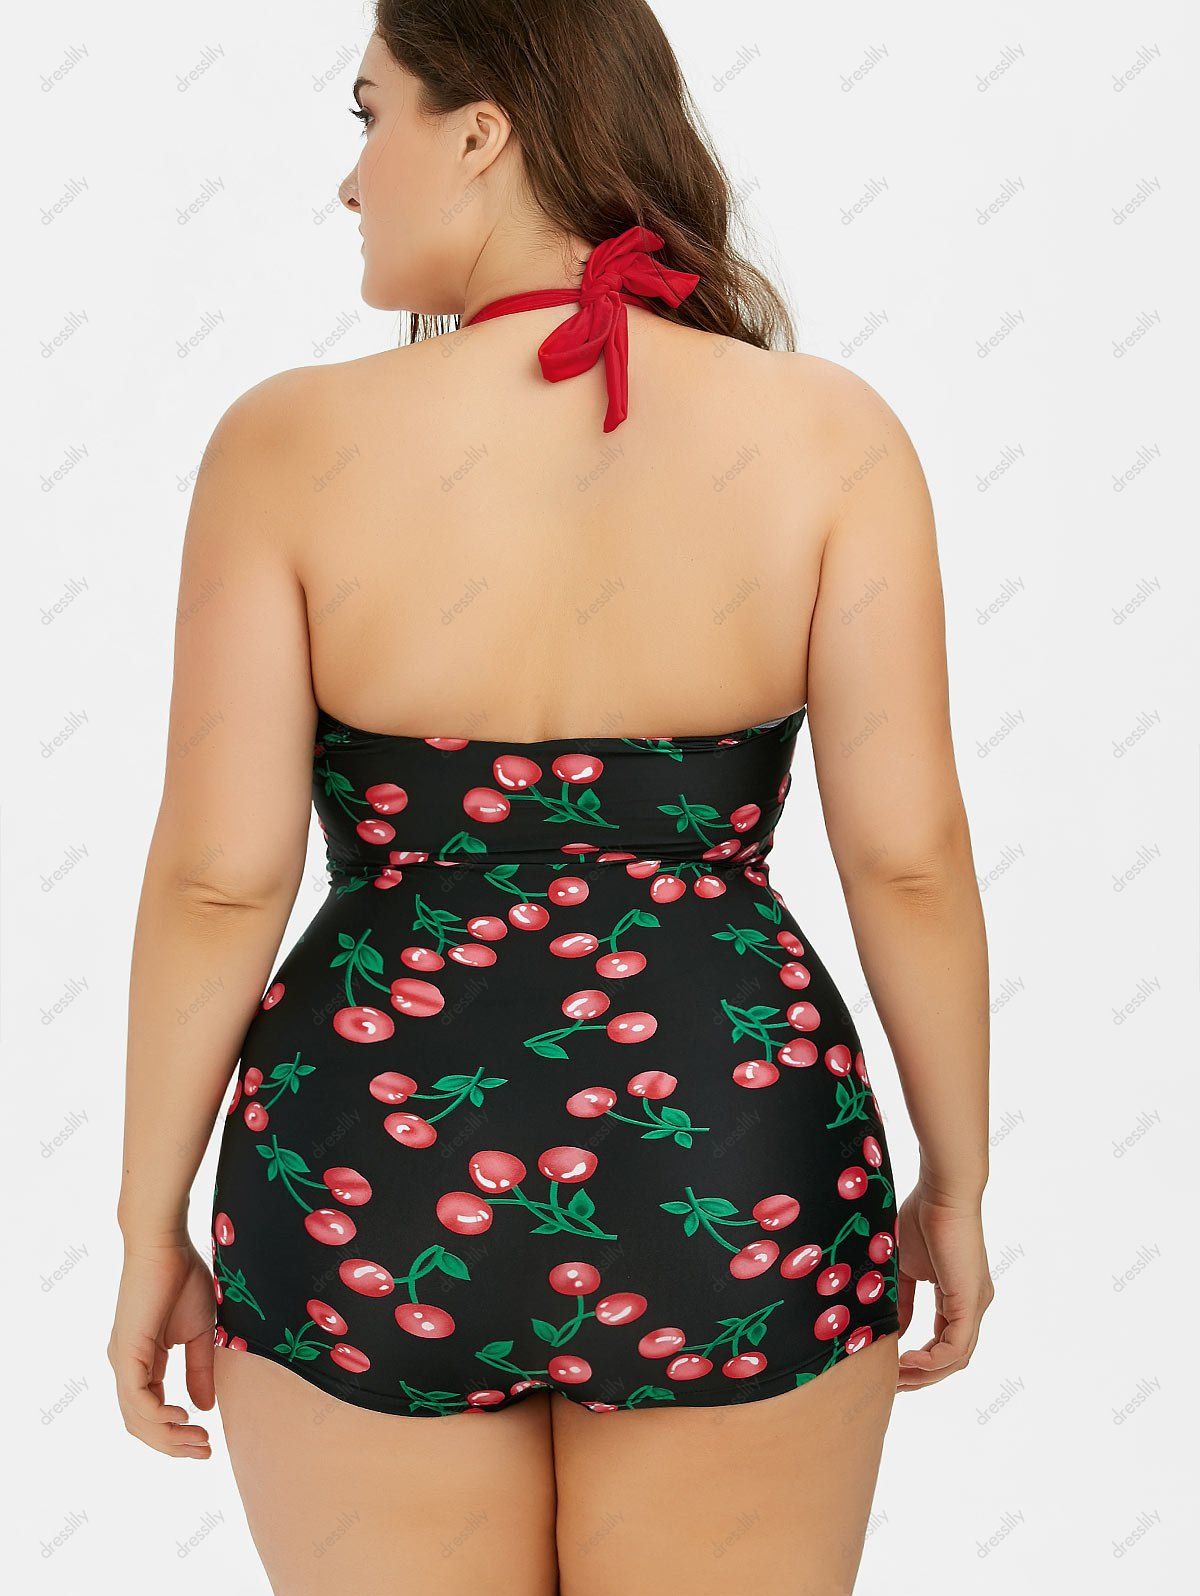 That plus size halter cherry boyshort vintage bathing suit for cash